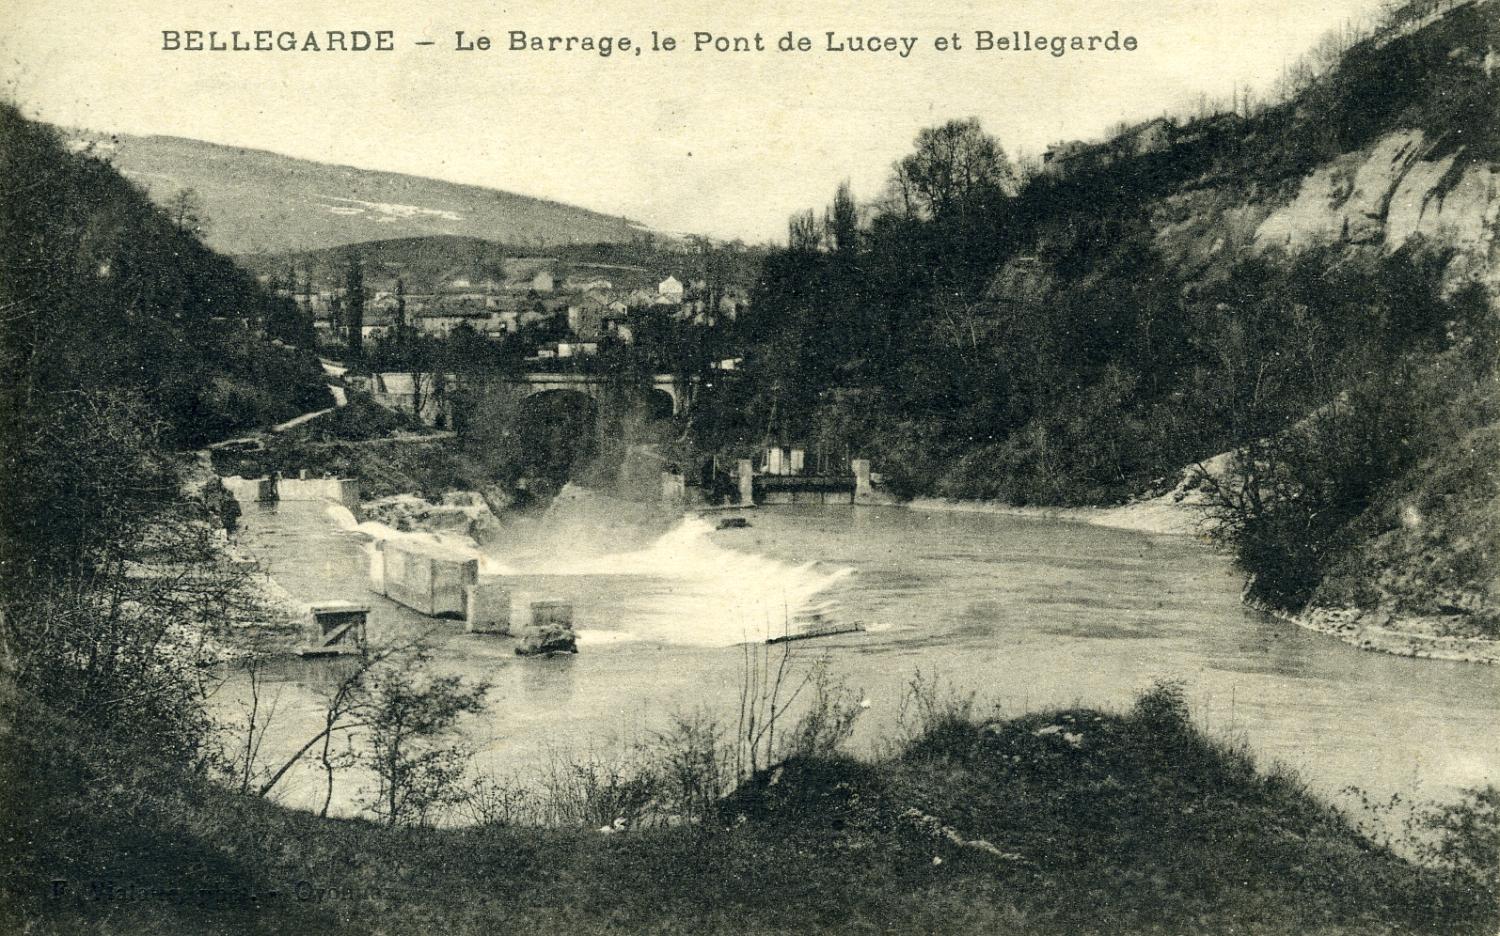 Bellegarde - Le Barrage, le Pont de Lucey et Bellegarde.